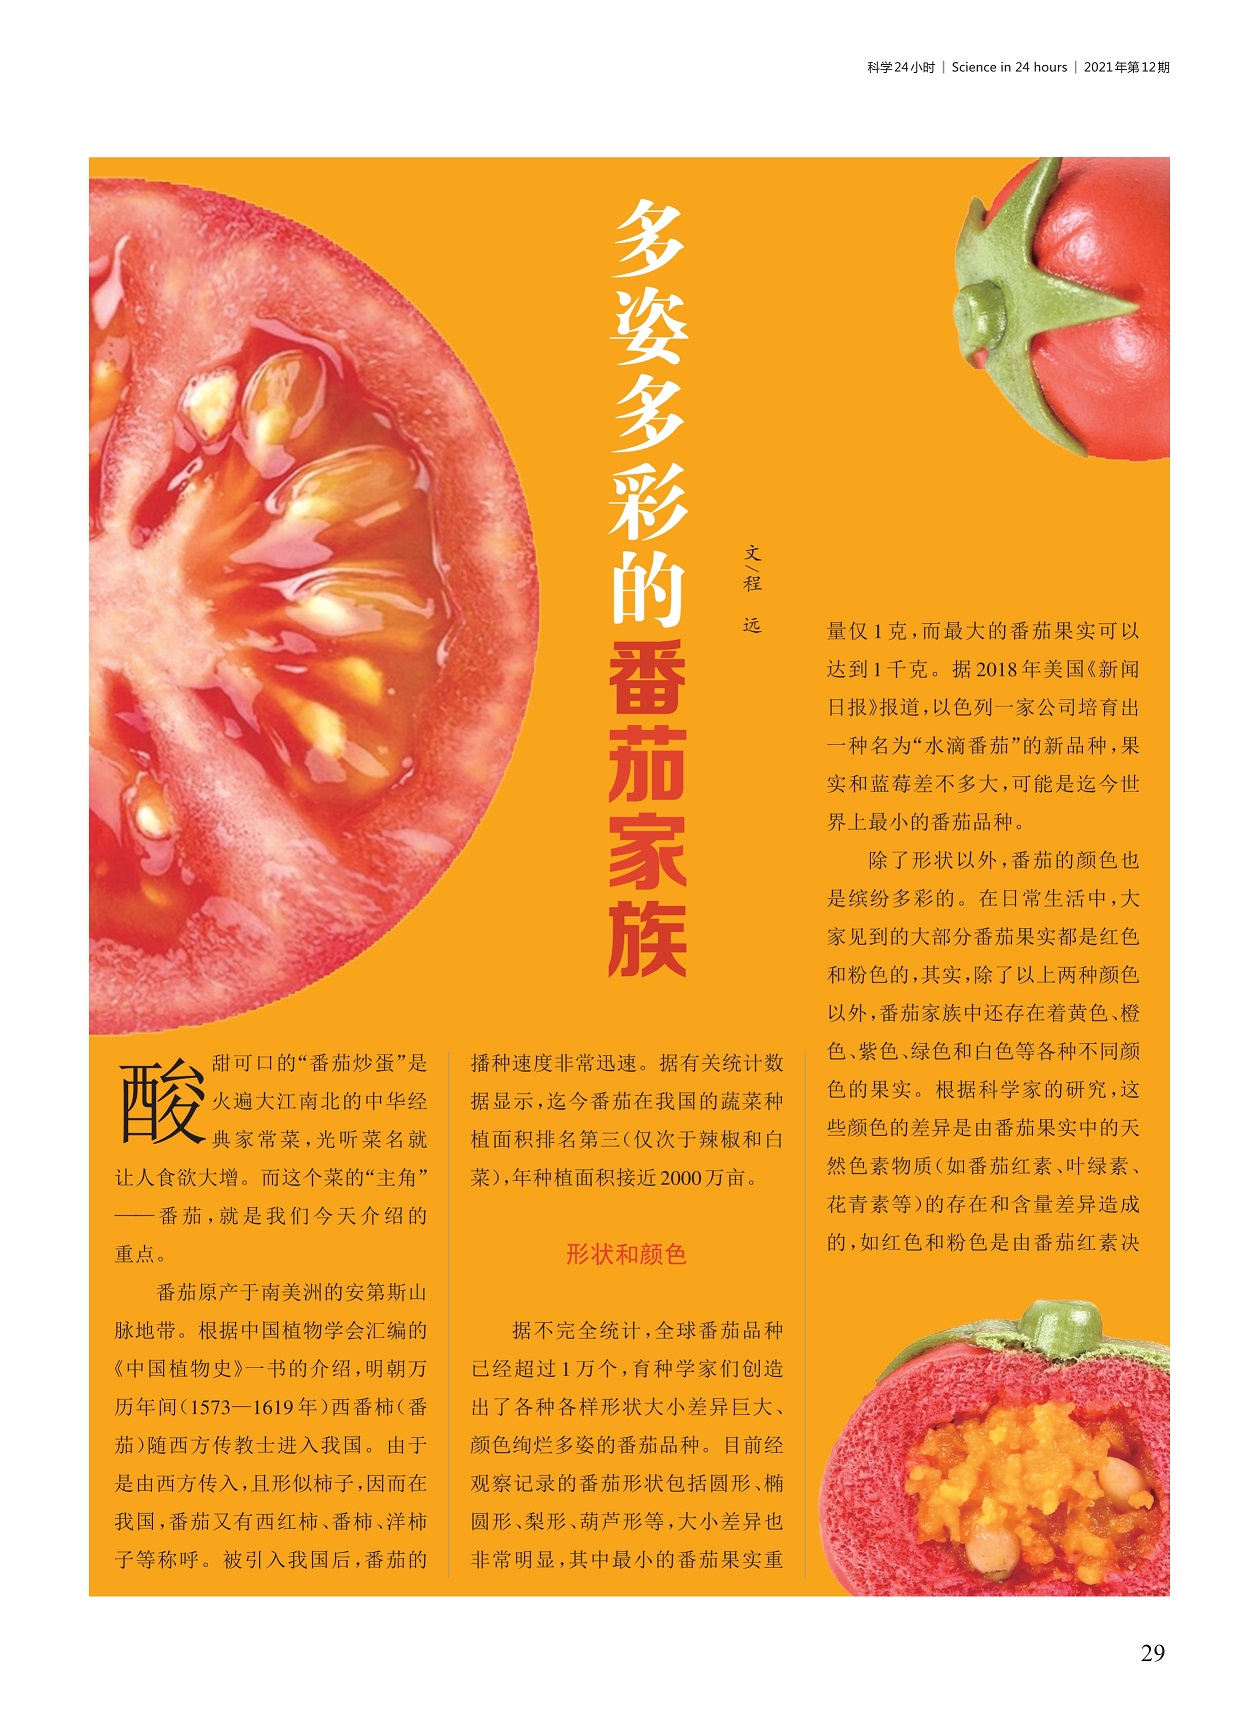 番茄原产于南美洲的安第斯山脉地带,番茄颜色差异是由果实中色素含量导致